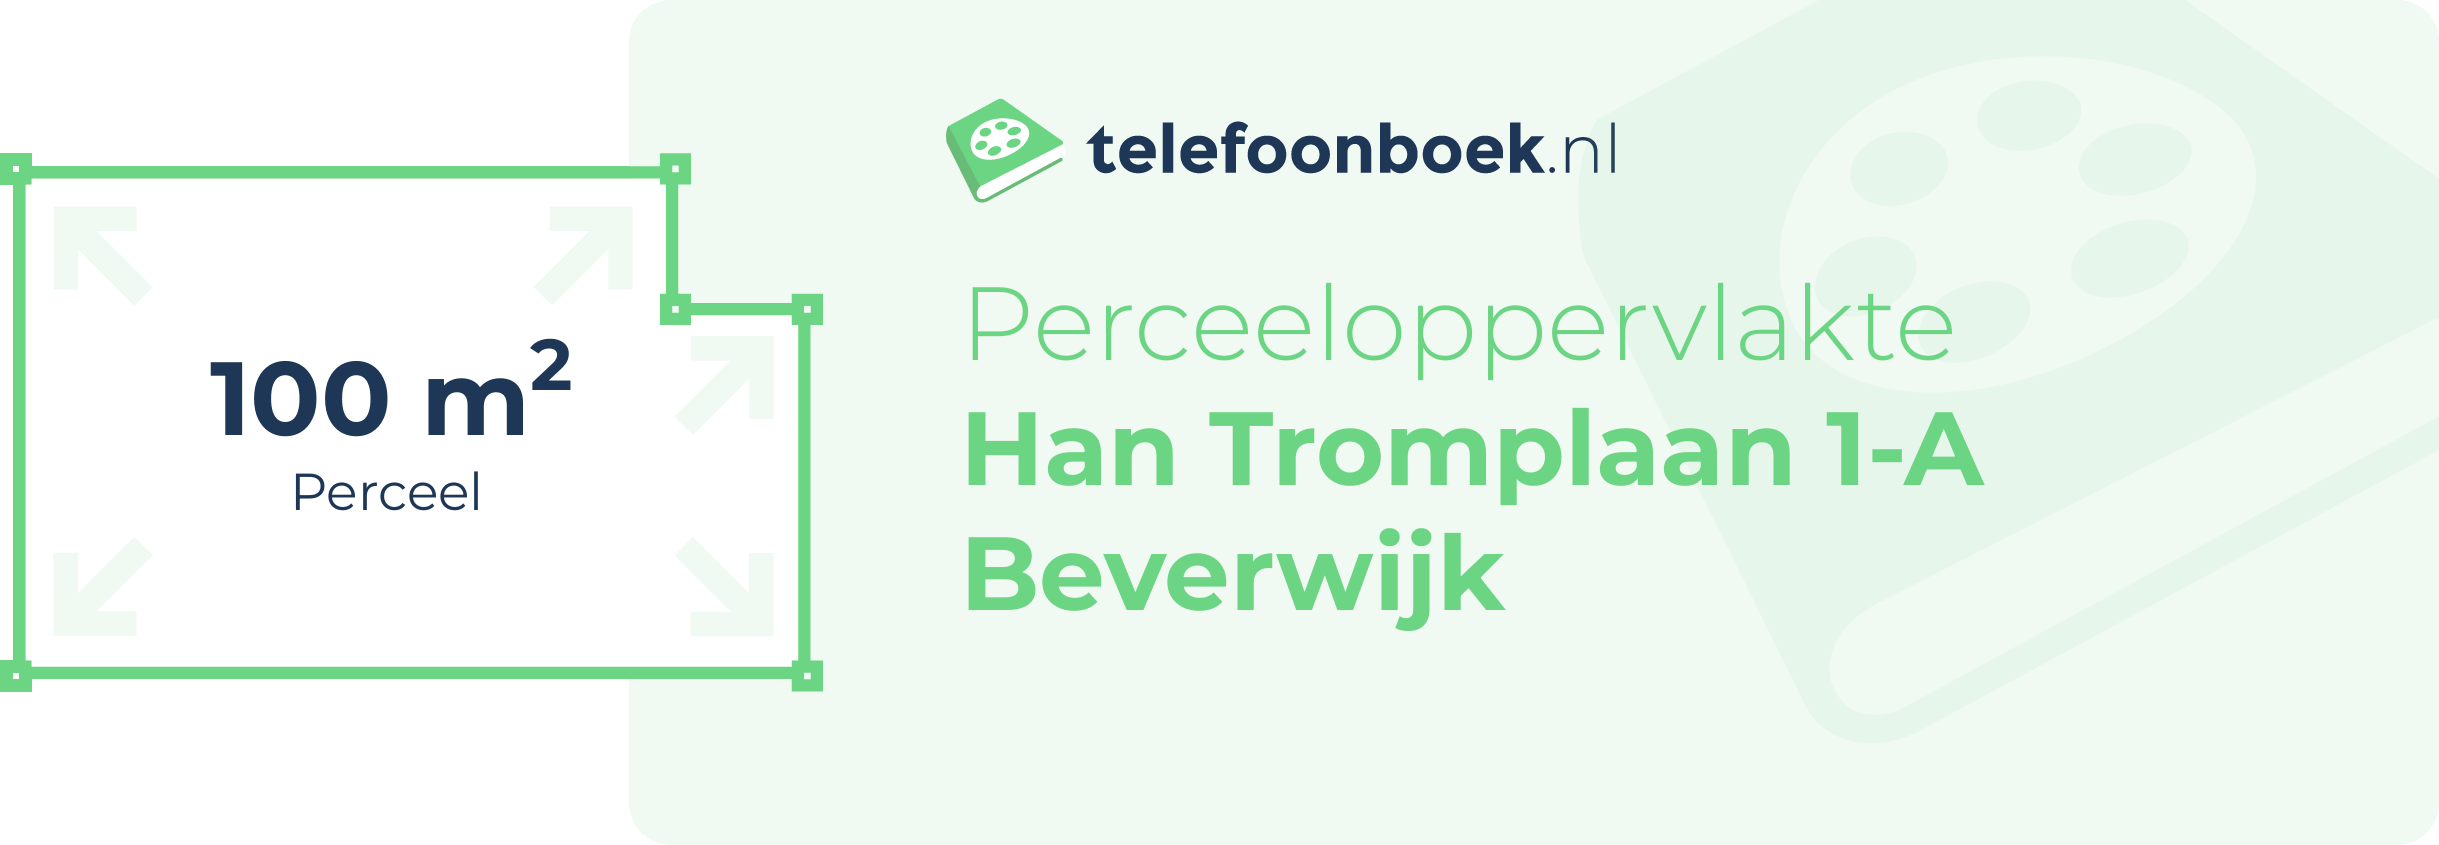 Perceeloppervlakte Han Tromplaan 1-A Beverwijk